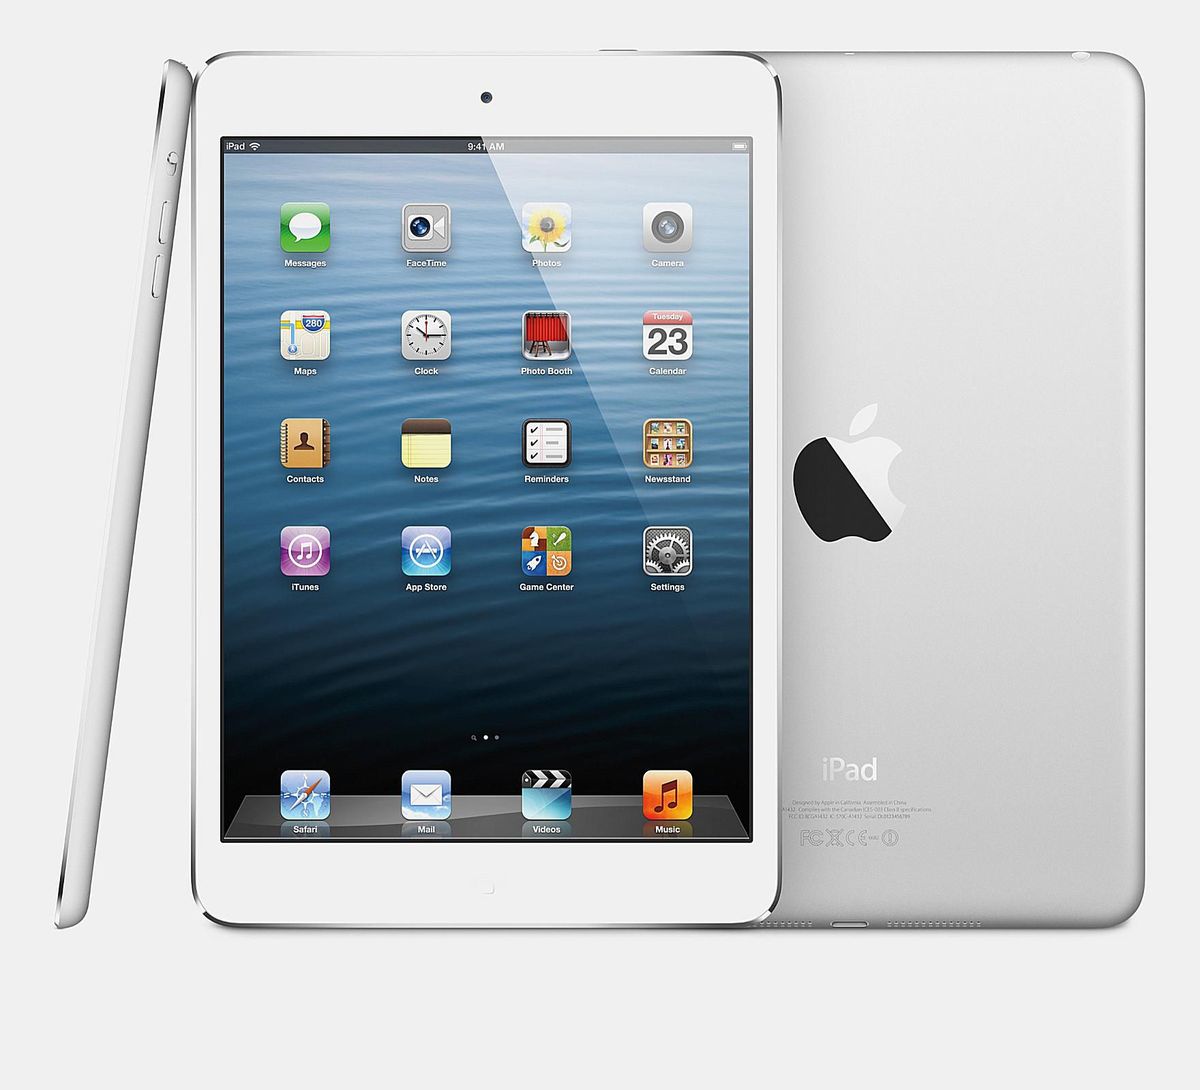 Visapusiška Apple iPad 4 apžvalga